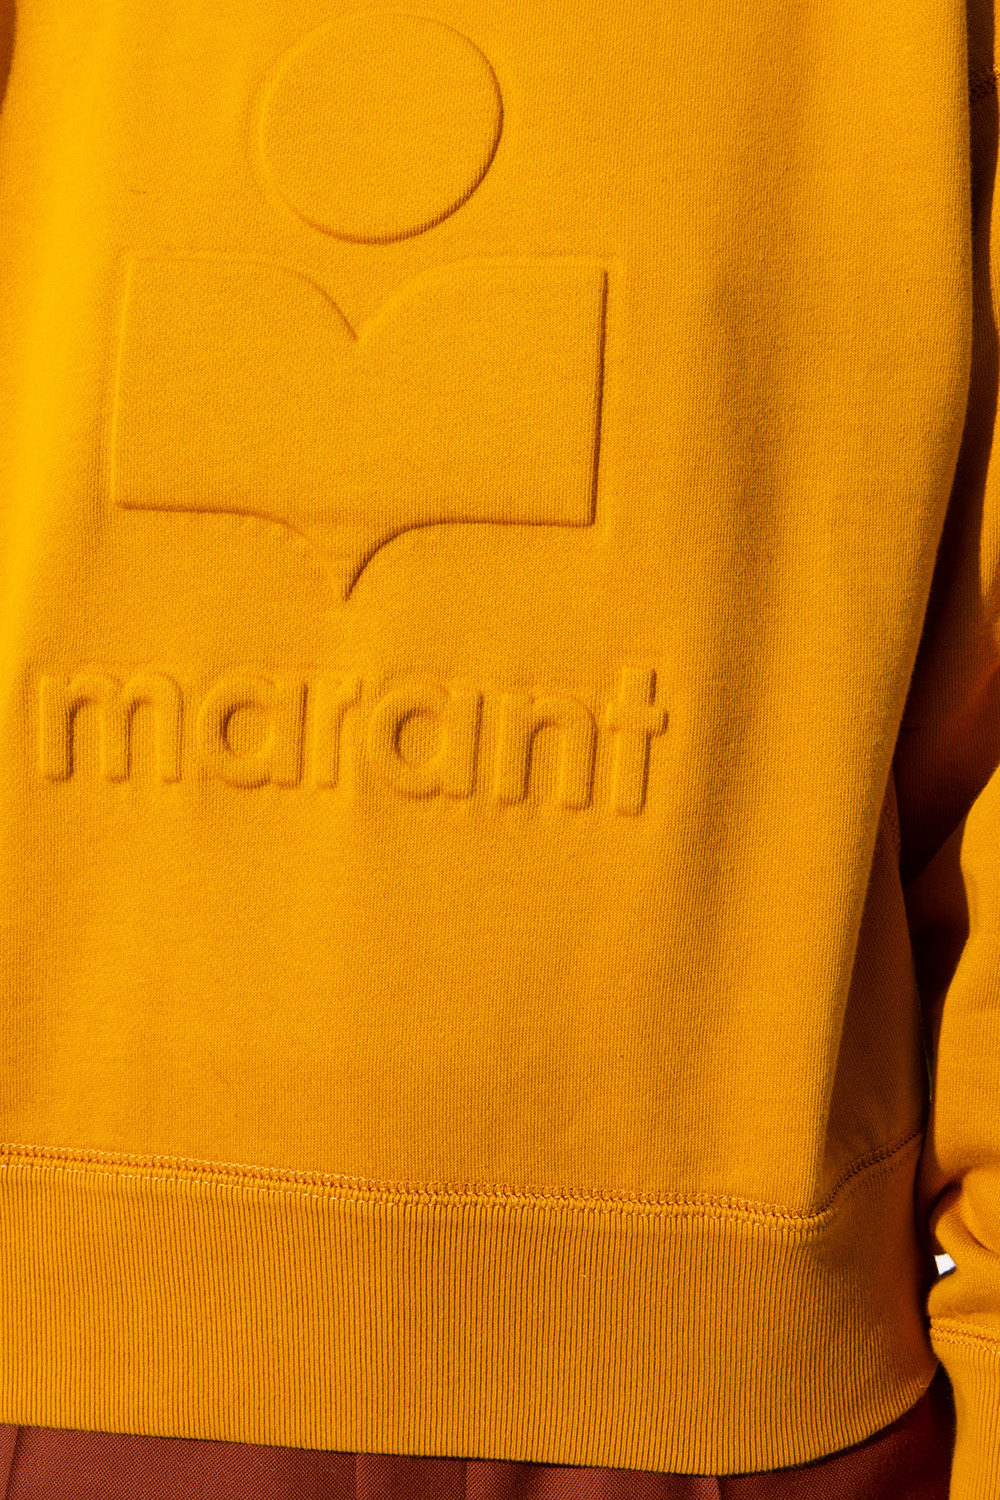 Marant Etoile shirt sweatshirt with logo